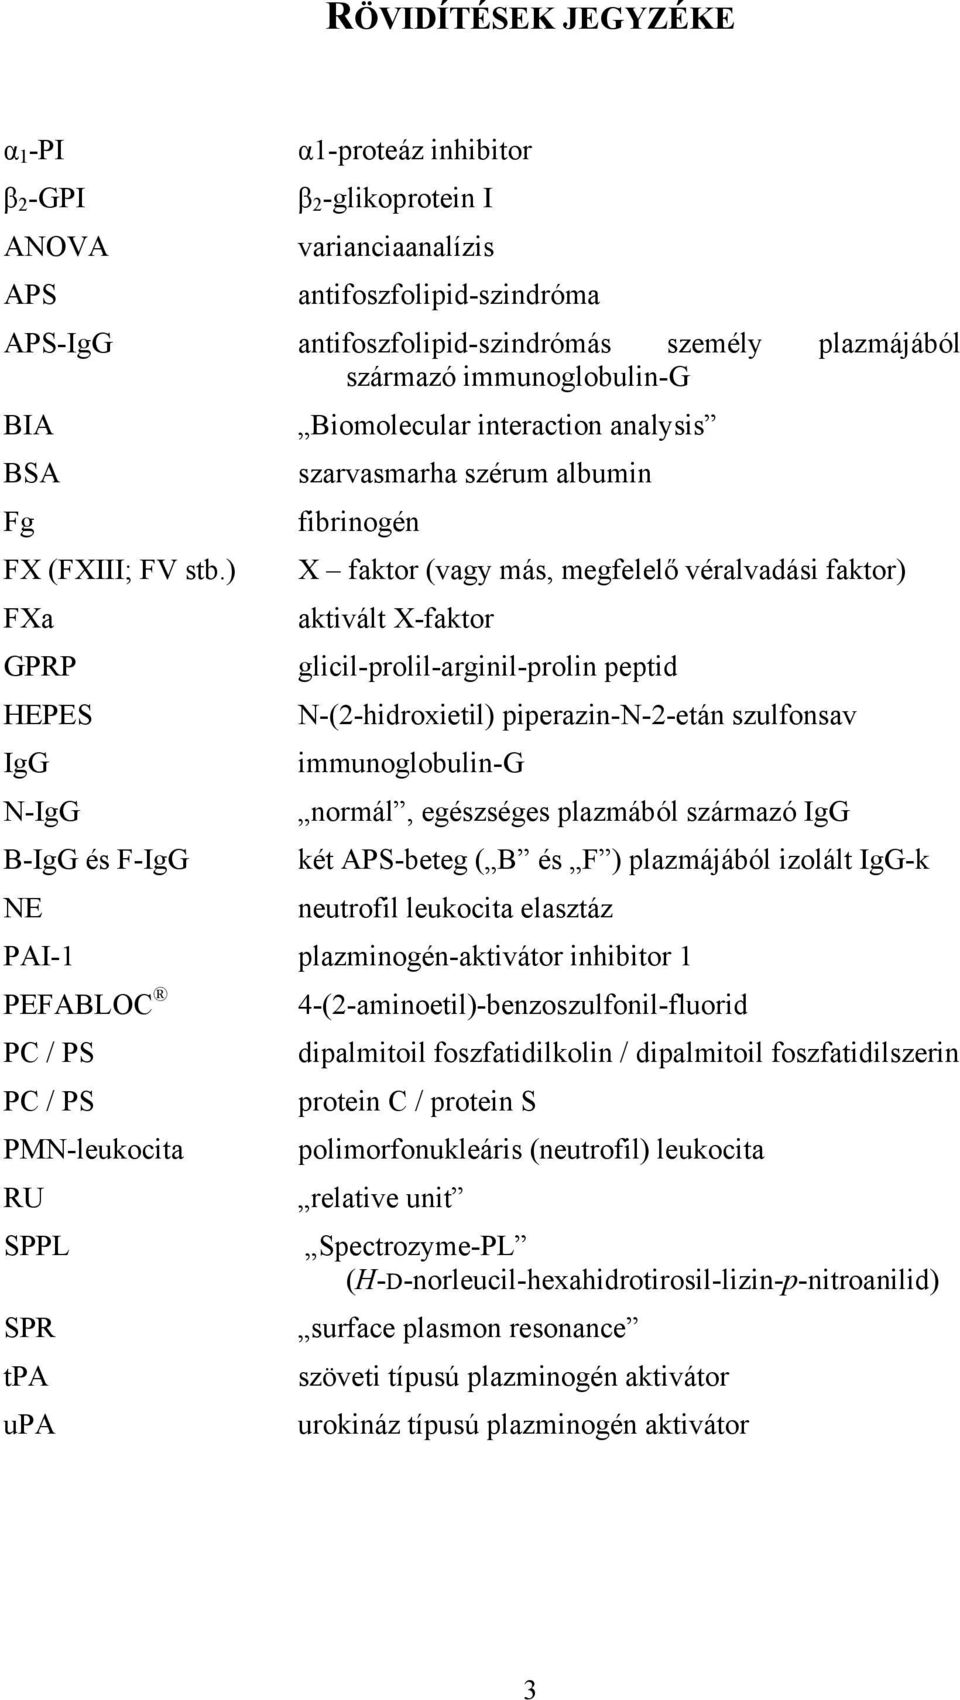 ) X faktor (vagy más, megfelelő véralvadási faktor) FXa aktivált X-faktor GPRP glicil-prolil-arginil-prolin peptid HEPES N-(2-hidroxietil) piperazin-n-2-etán szulfonsav IgG immunoglobulin-g N-IgG